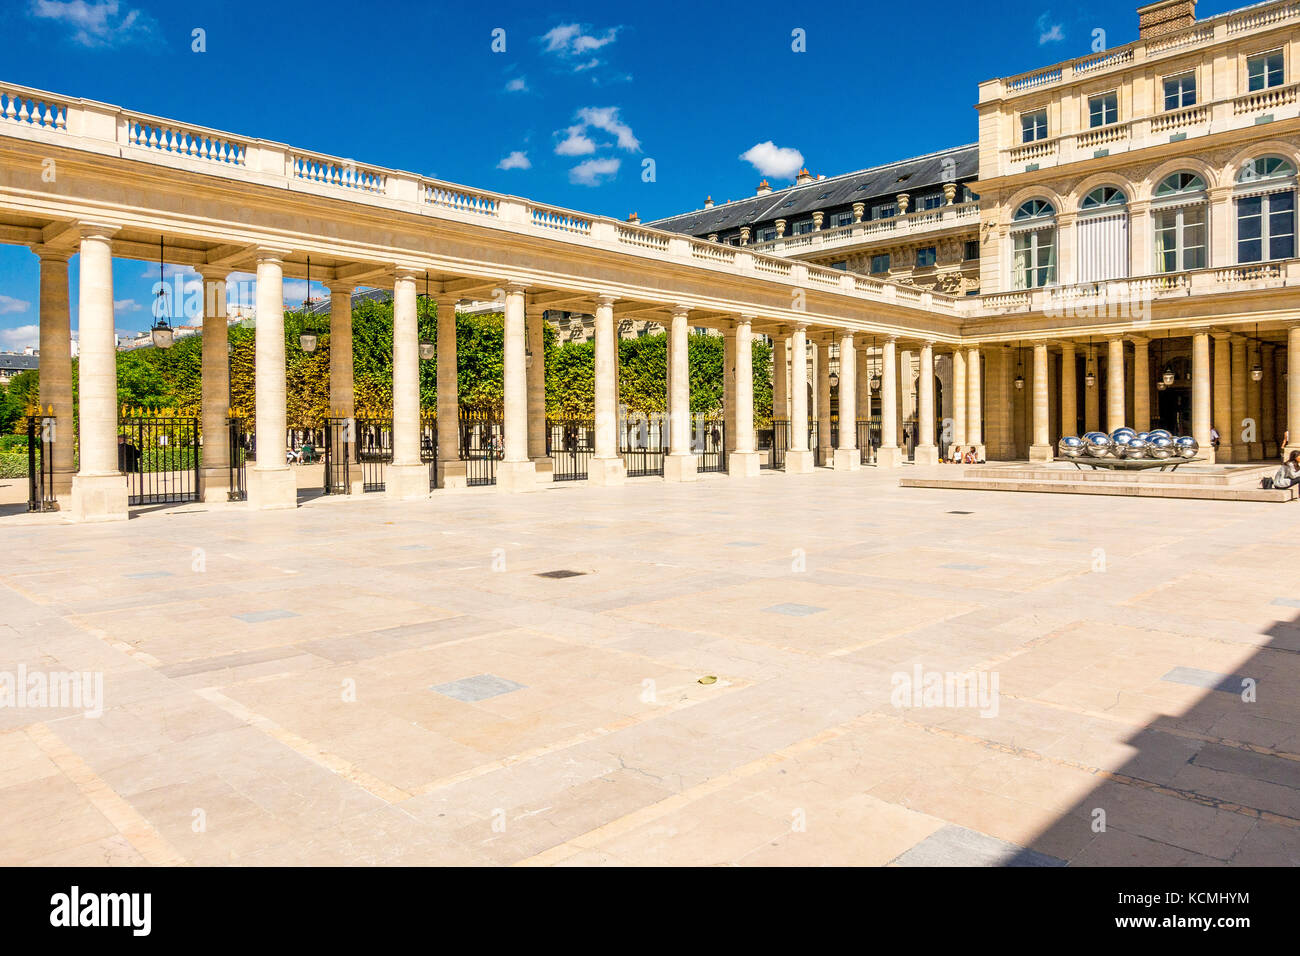 La cour Cour d'honneur du Palais Royal contient deux fontaines à boule argentée du sculpteur belge Pol Bury. Paris, France Banque D'Images